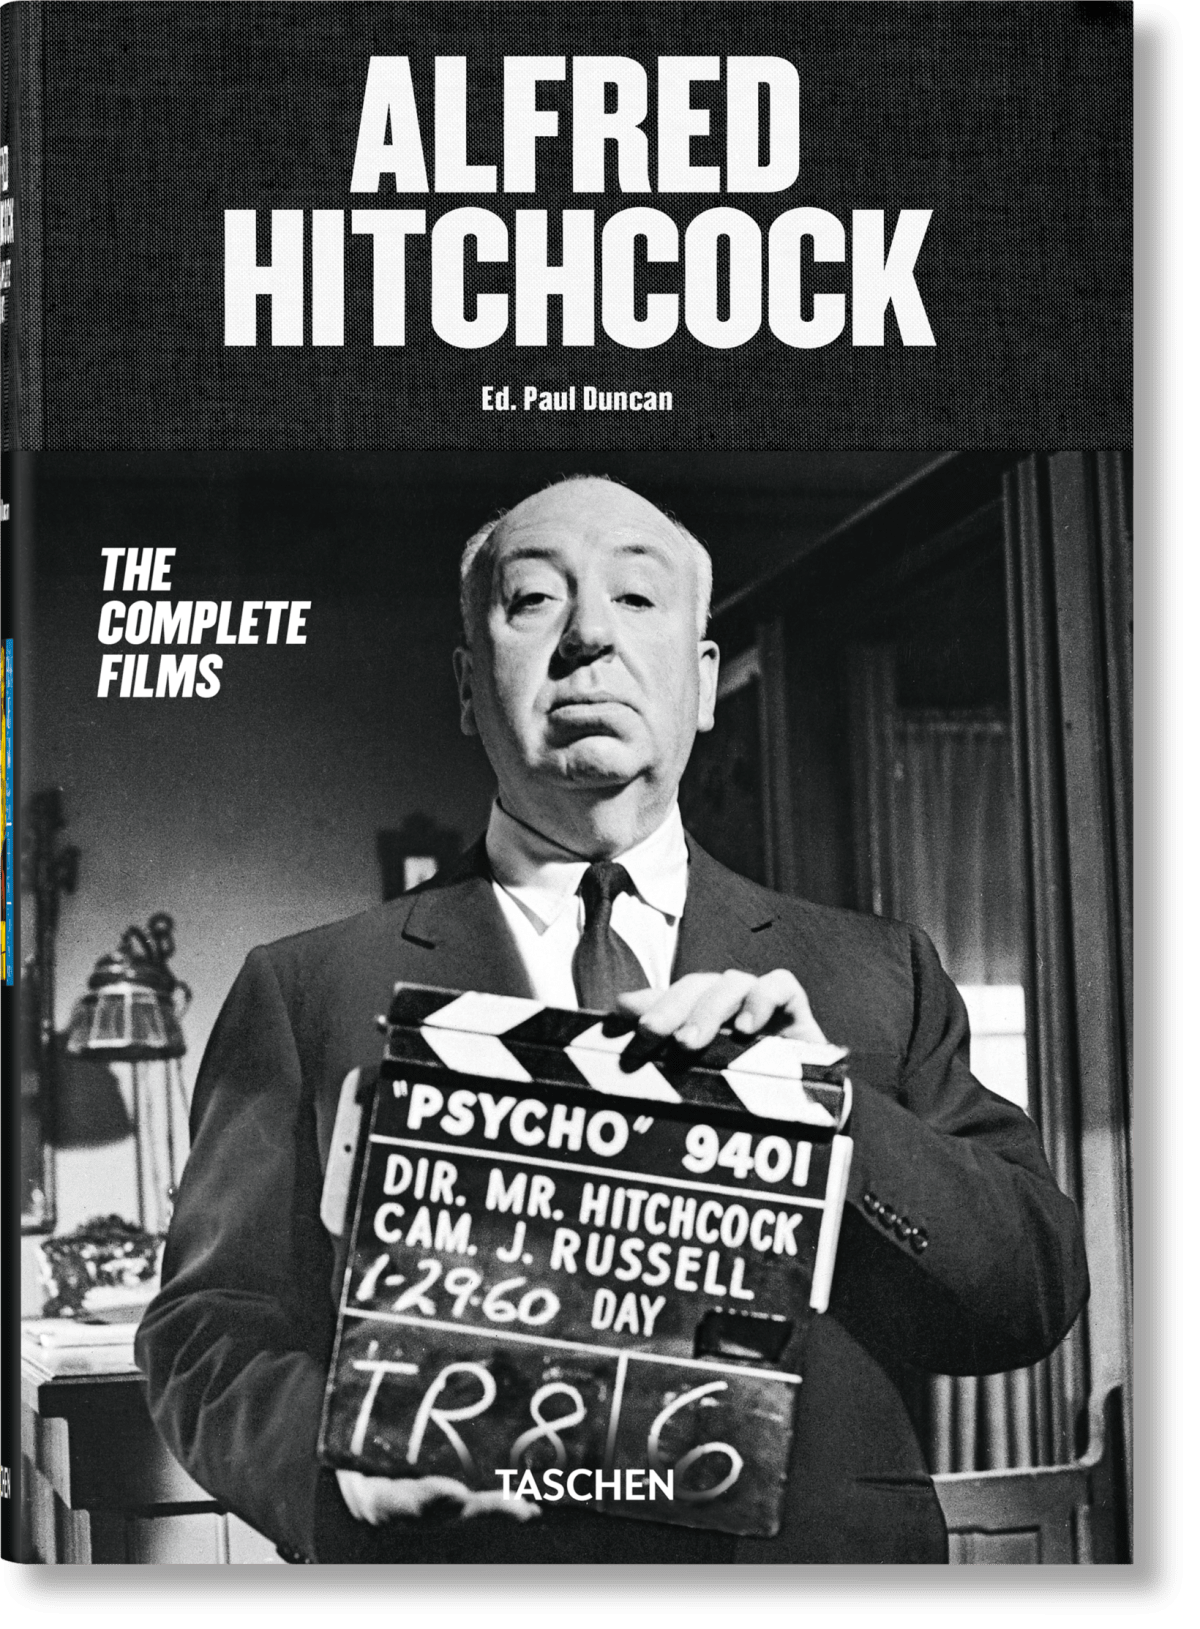 Alfred Hitchcock. Todas las películas